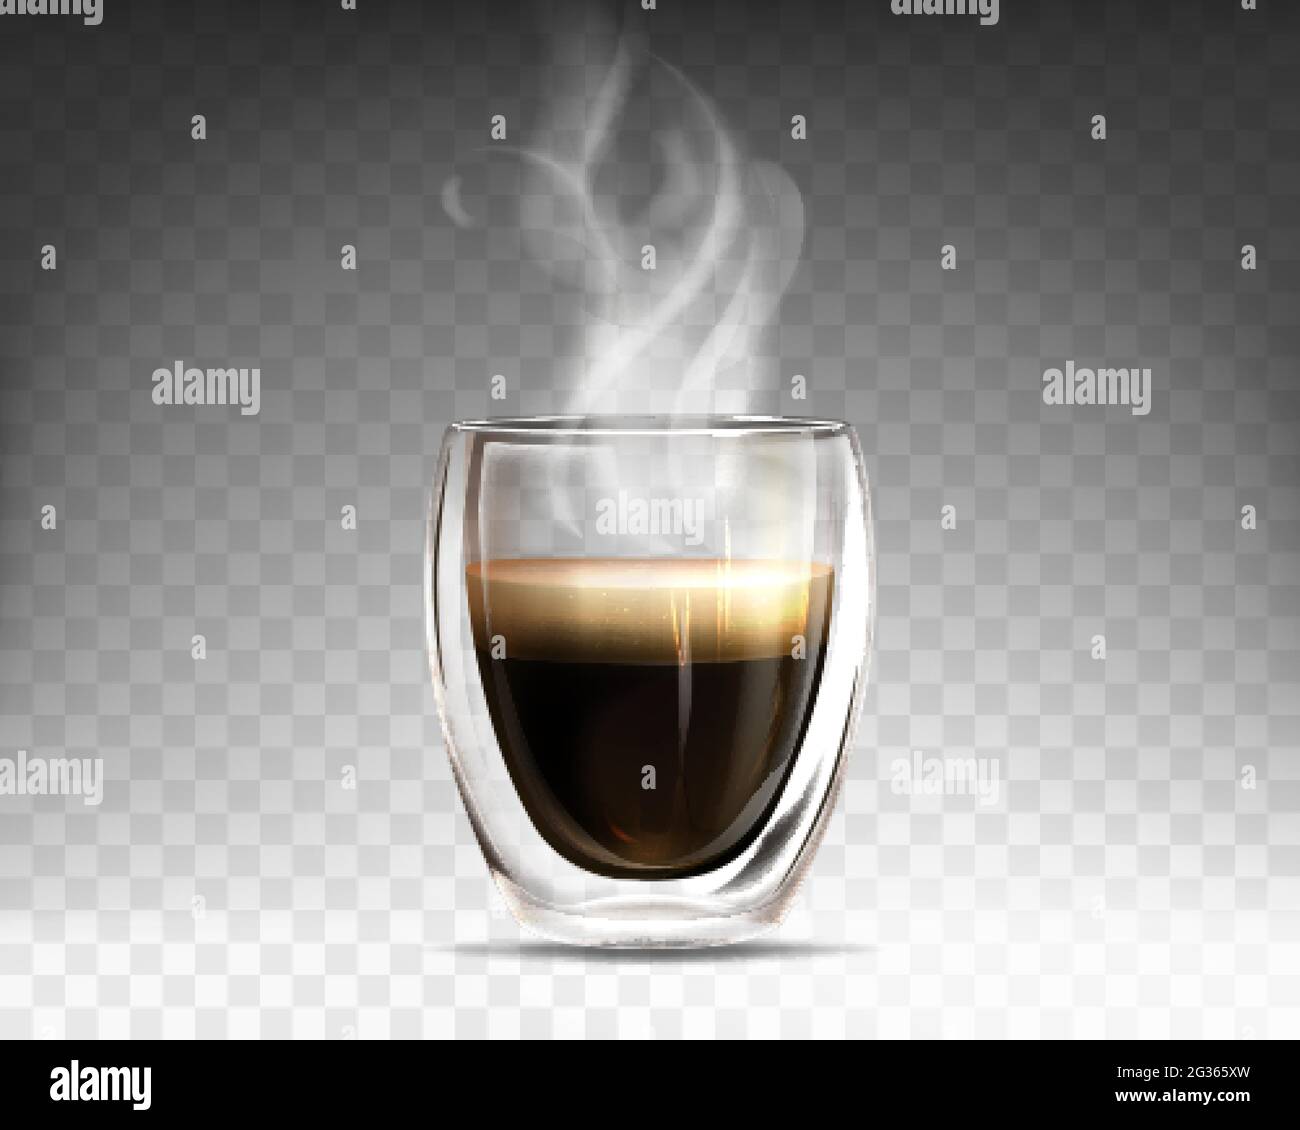 Realistischer, heiß dampfender Kaffee mit einer Tasse aus Glas. Becher mit Doppelwand voller Aroma americano. Espresso-Getränk mit Rauch isoliert auf transparentem Hintergrund. Vorlage für Werbung oder Produktdesign. Stock Vektor